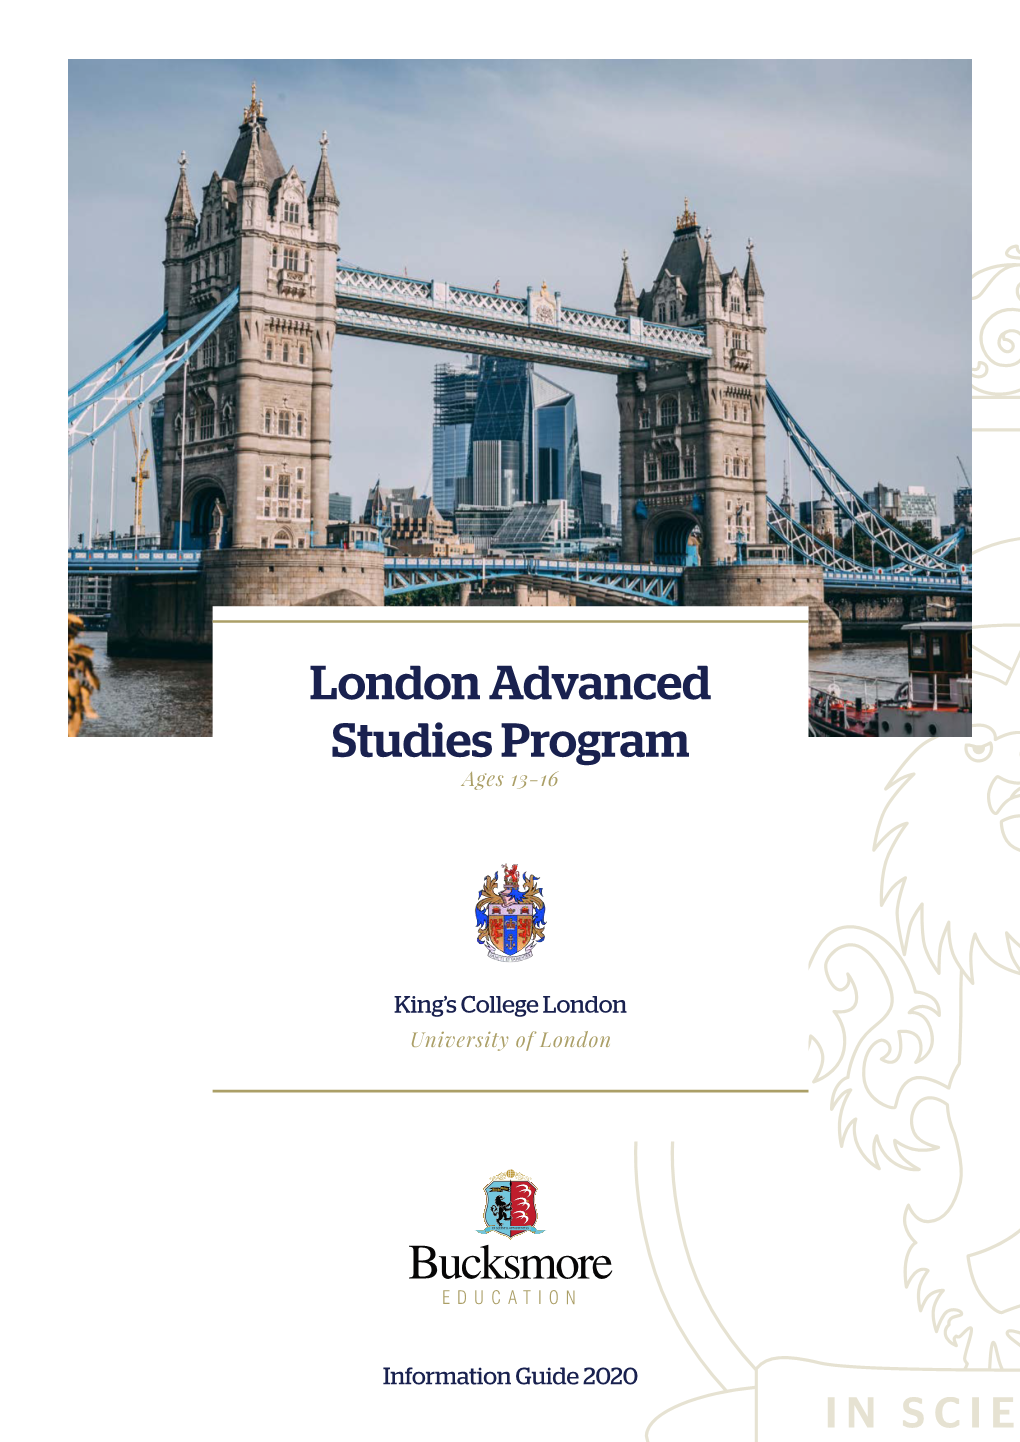 London Advanced Studies Program Ages 13-16